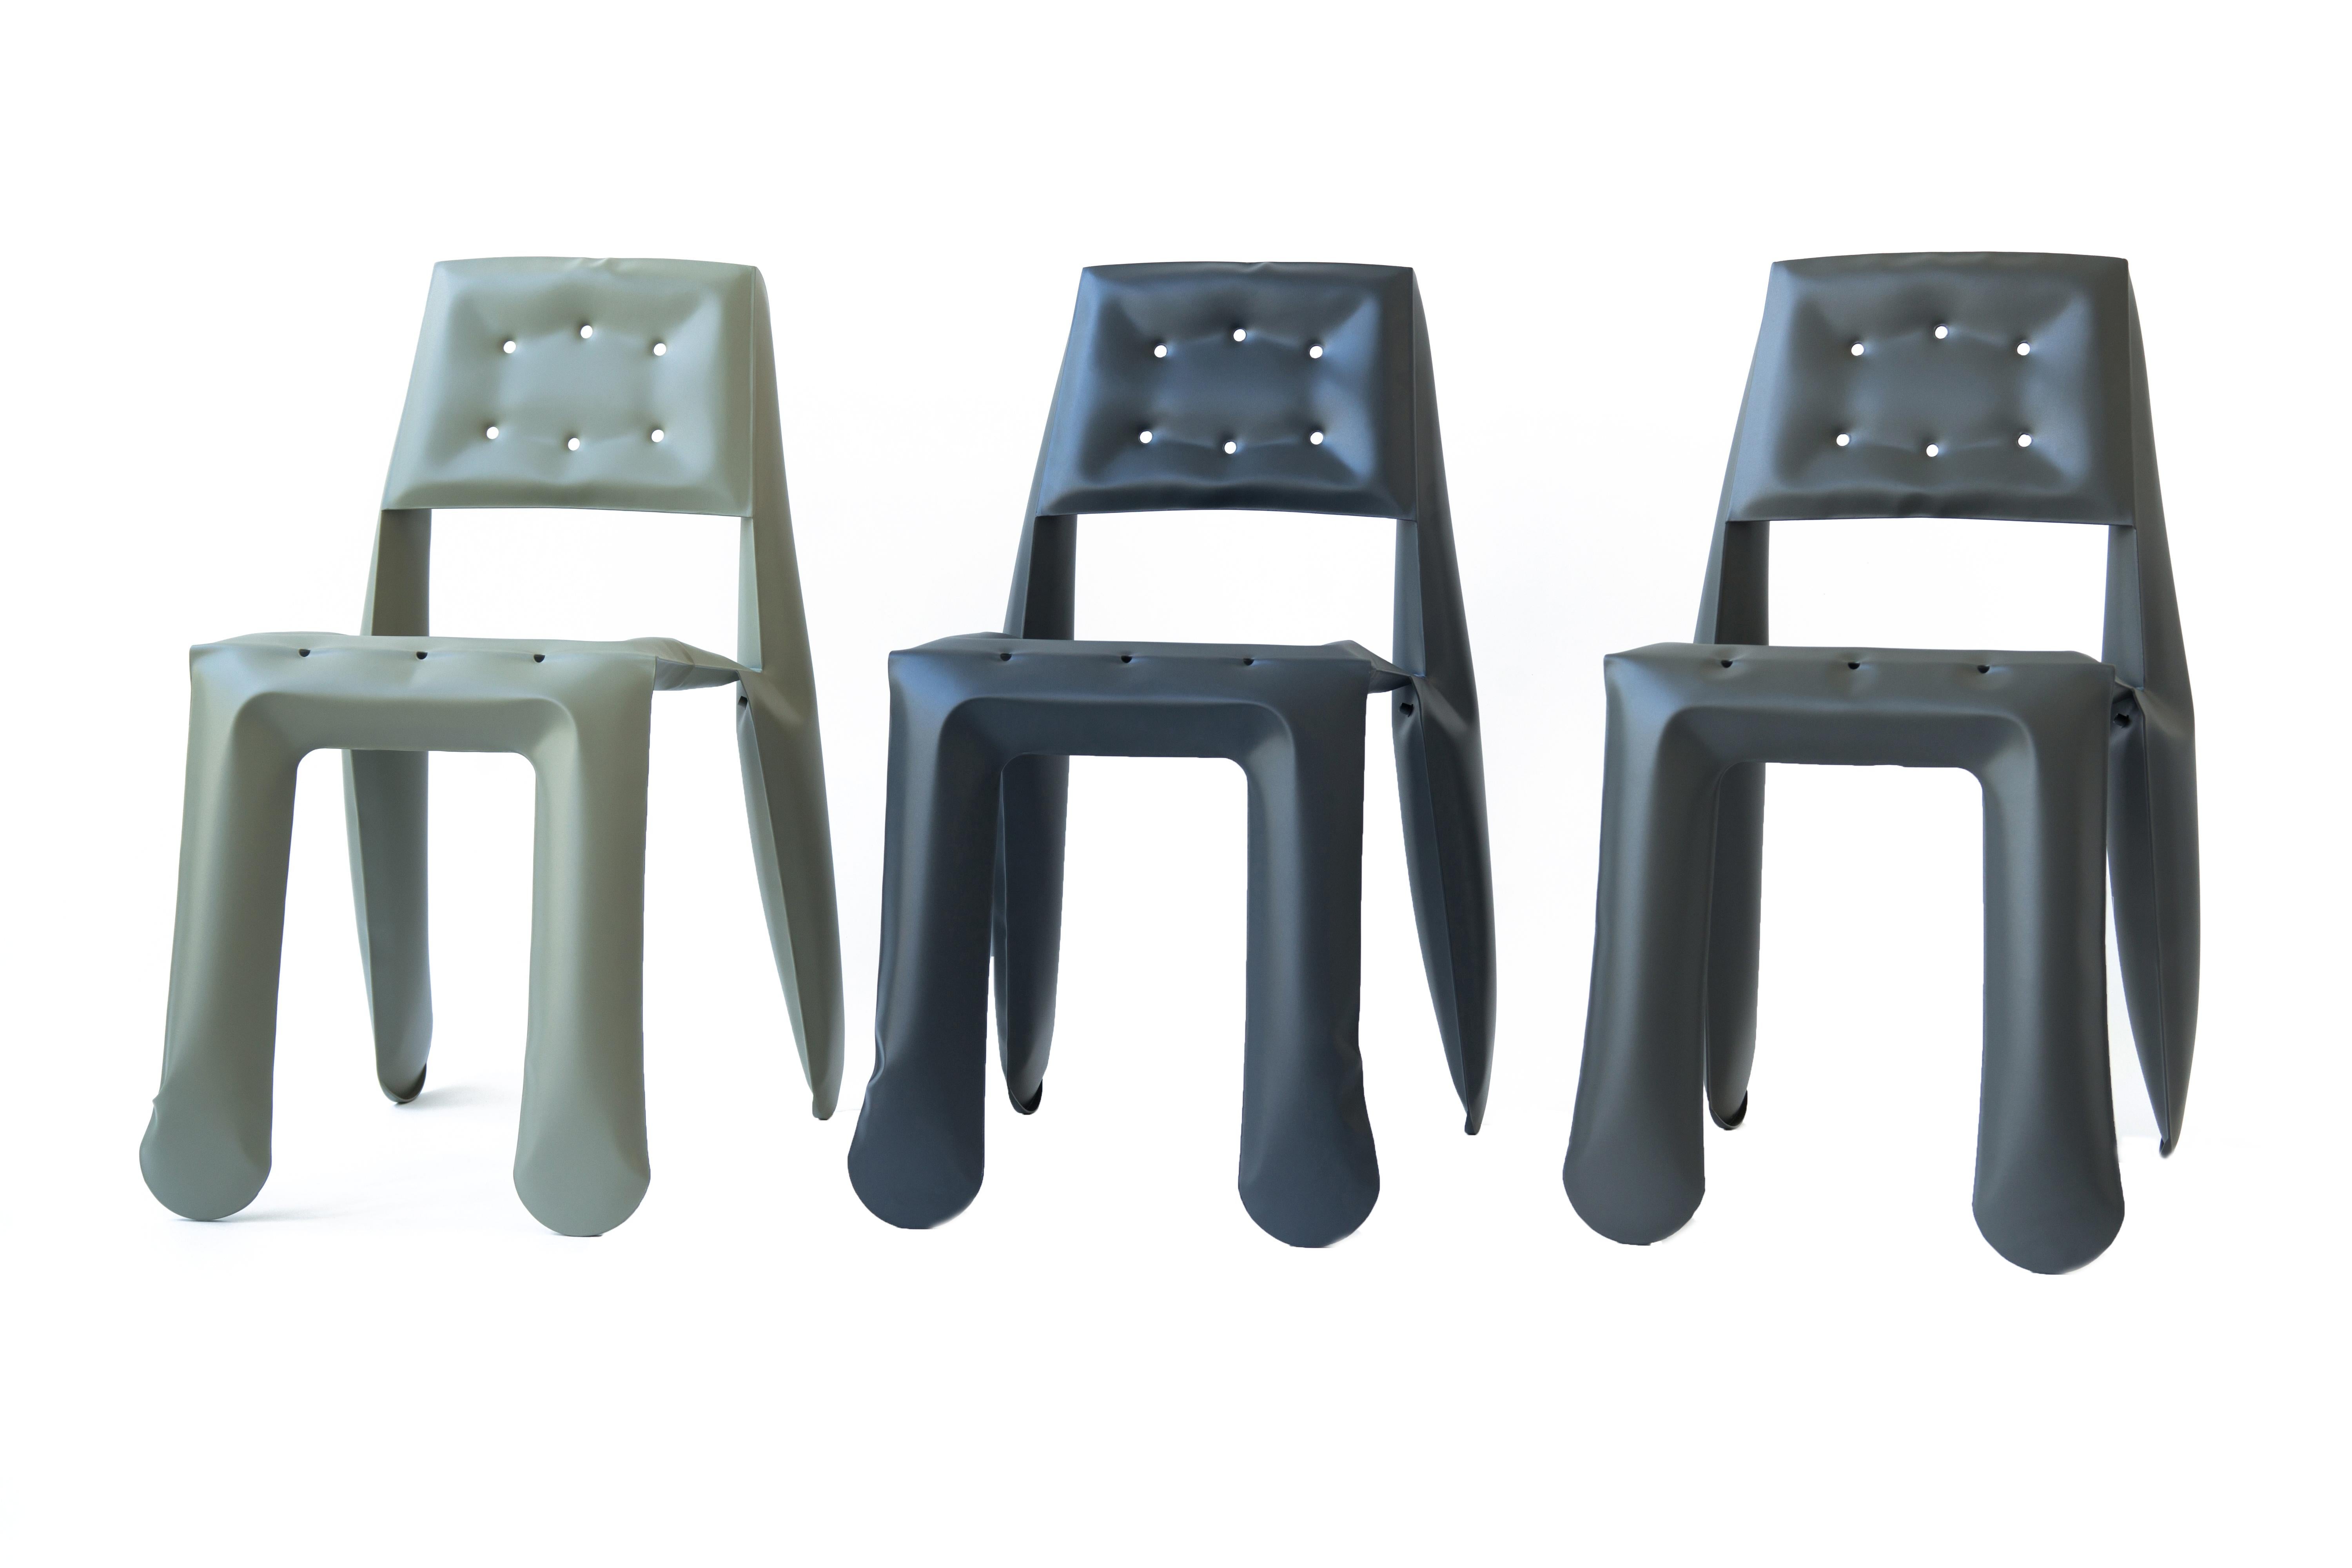 Umbra Grey Aluminum Chippensteel 0.5 Sculptural Chair by Zieta For Sale 4